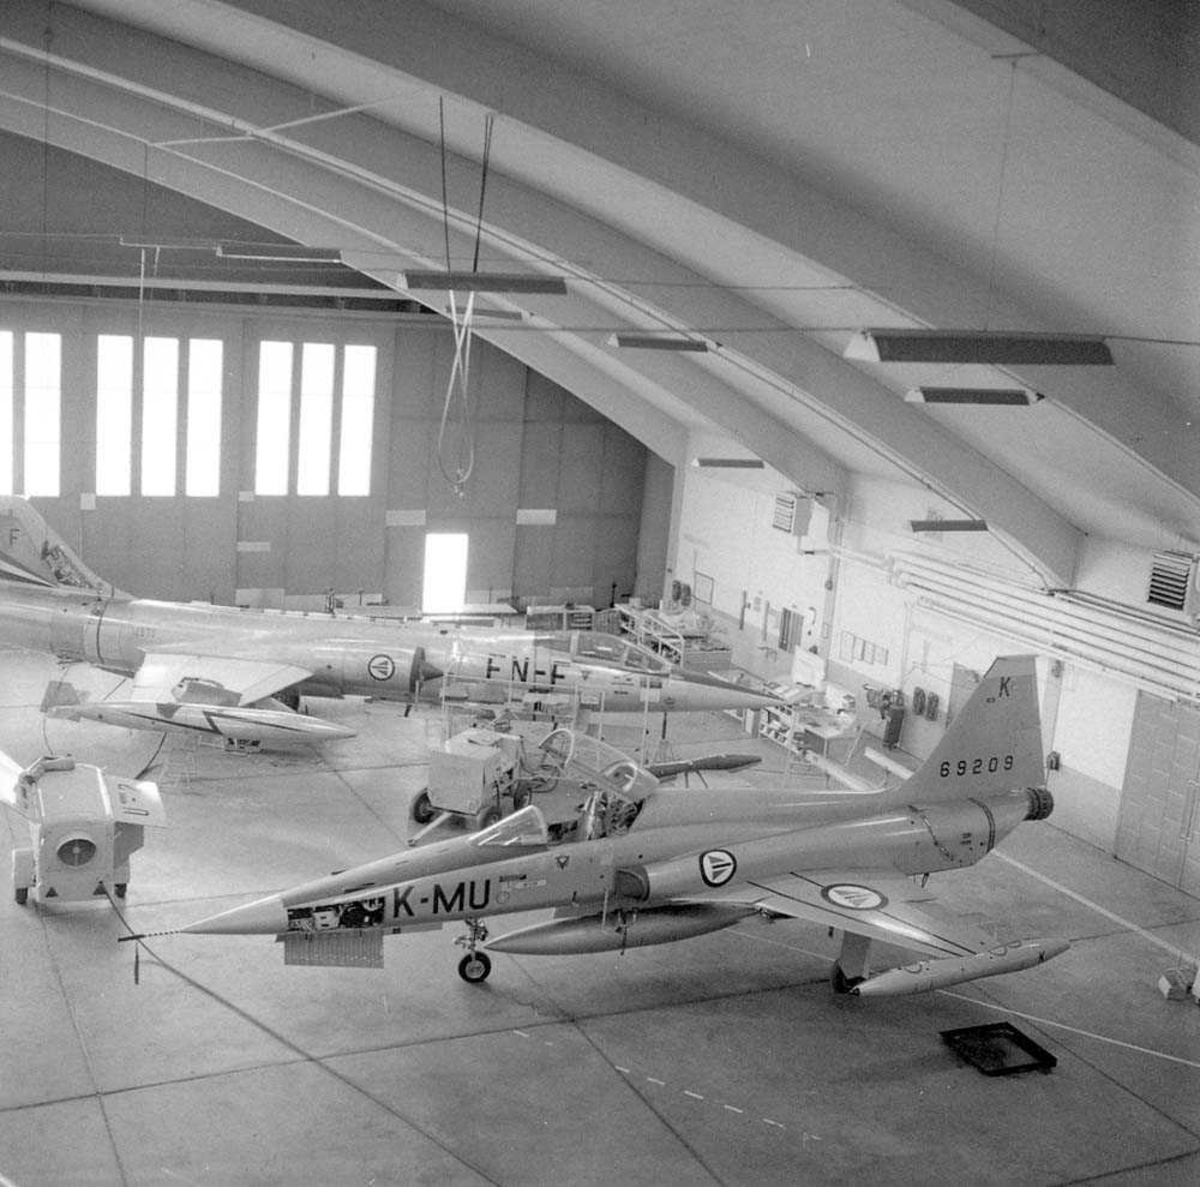 Her i Hangar A sees den første Freedomsfighter F-5-A som er til ettersyn på Bodø flystasjon. Jagerflyet har kjennetegn MU-K og serie nr. 69209. I bakgrunnen sees en  F-104-G Starfighter med kjennetegn FN-F og serie nr. 12630.